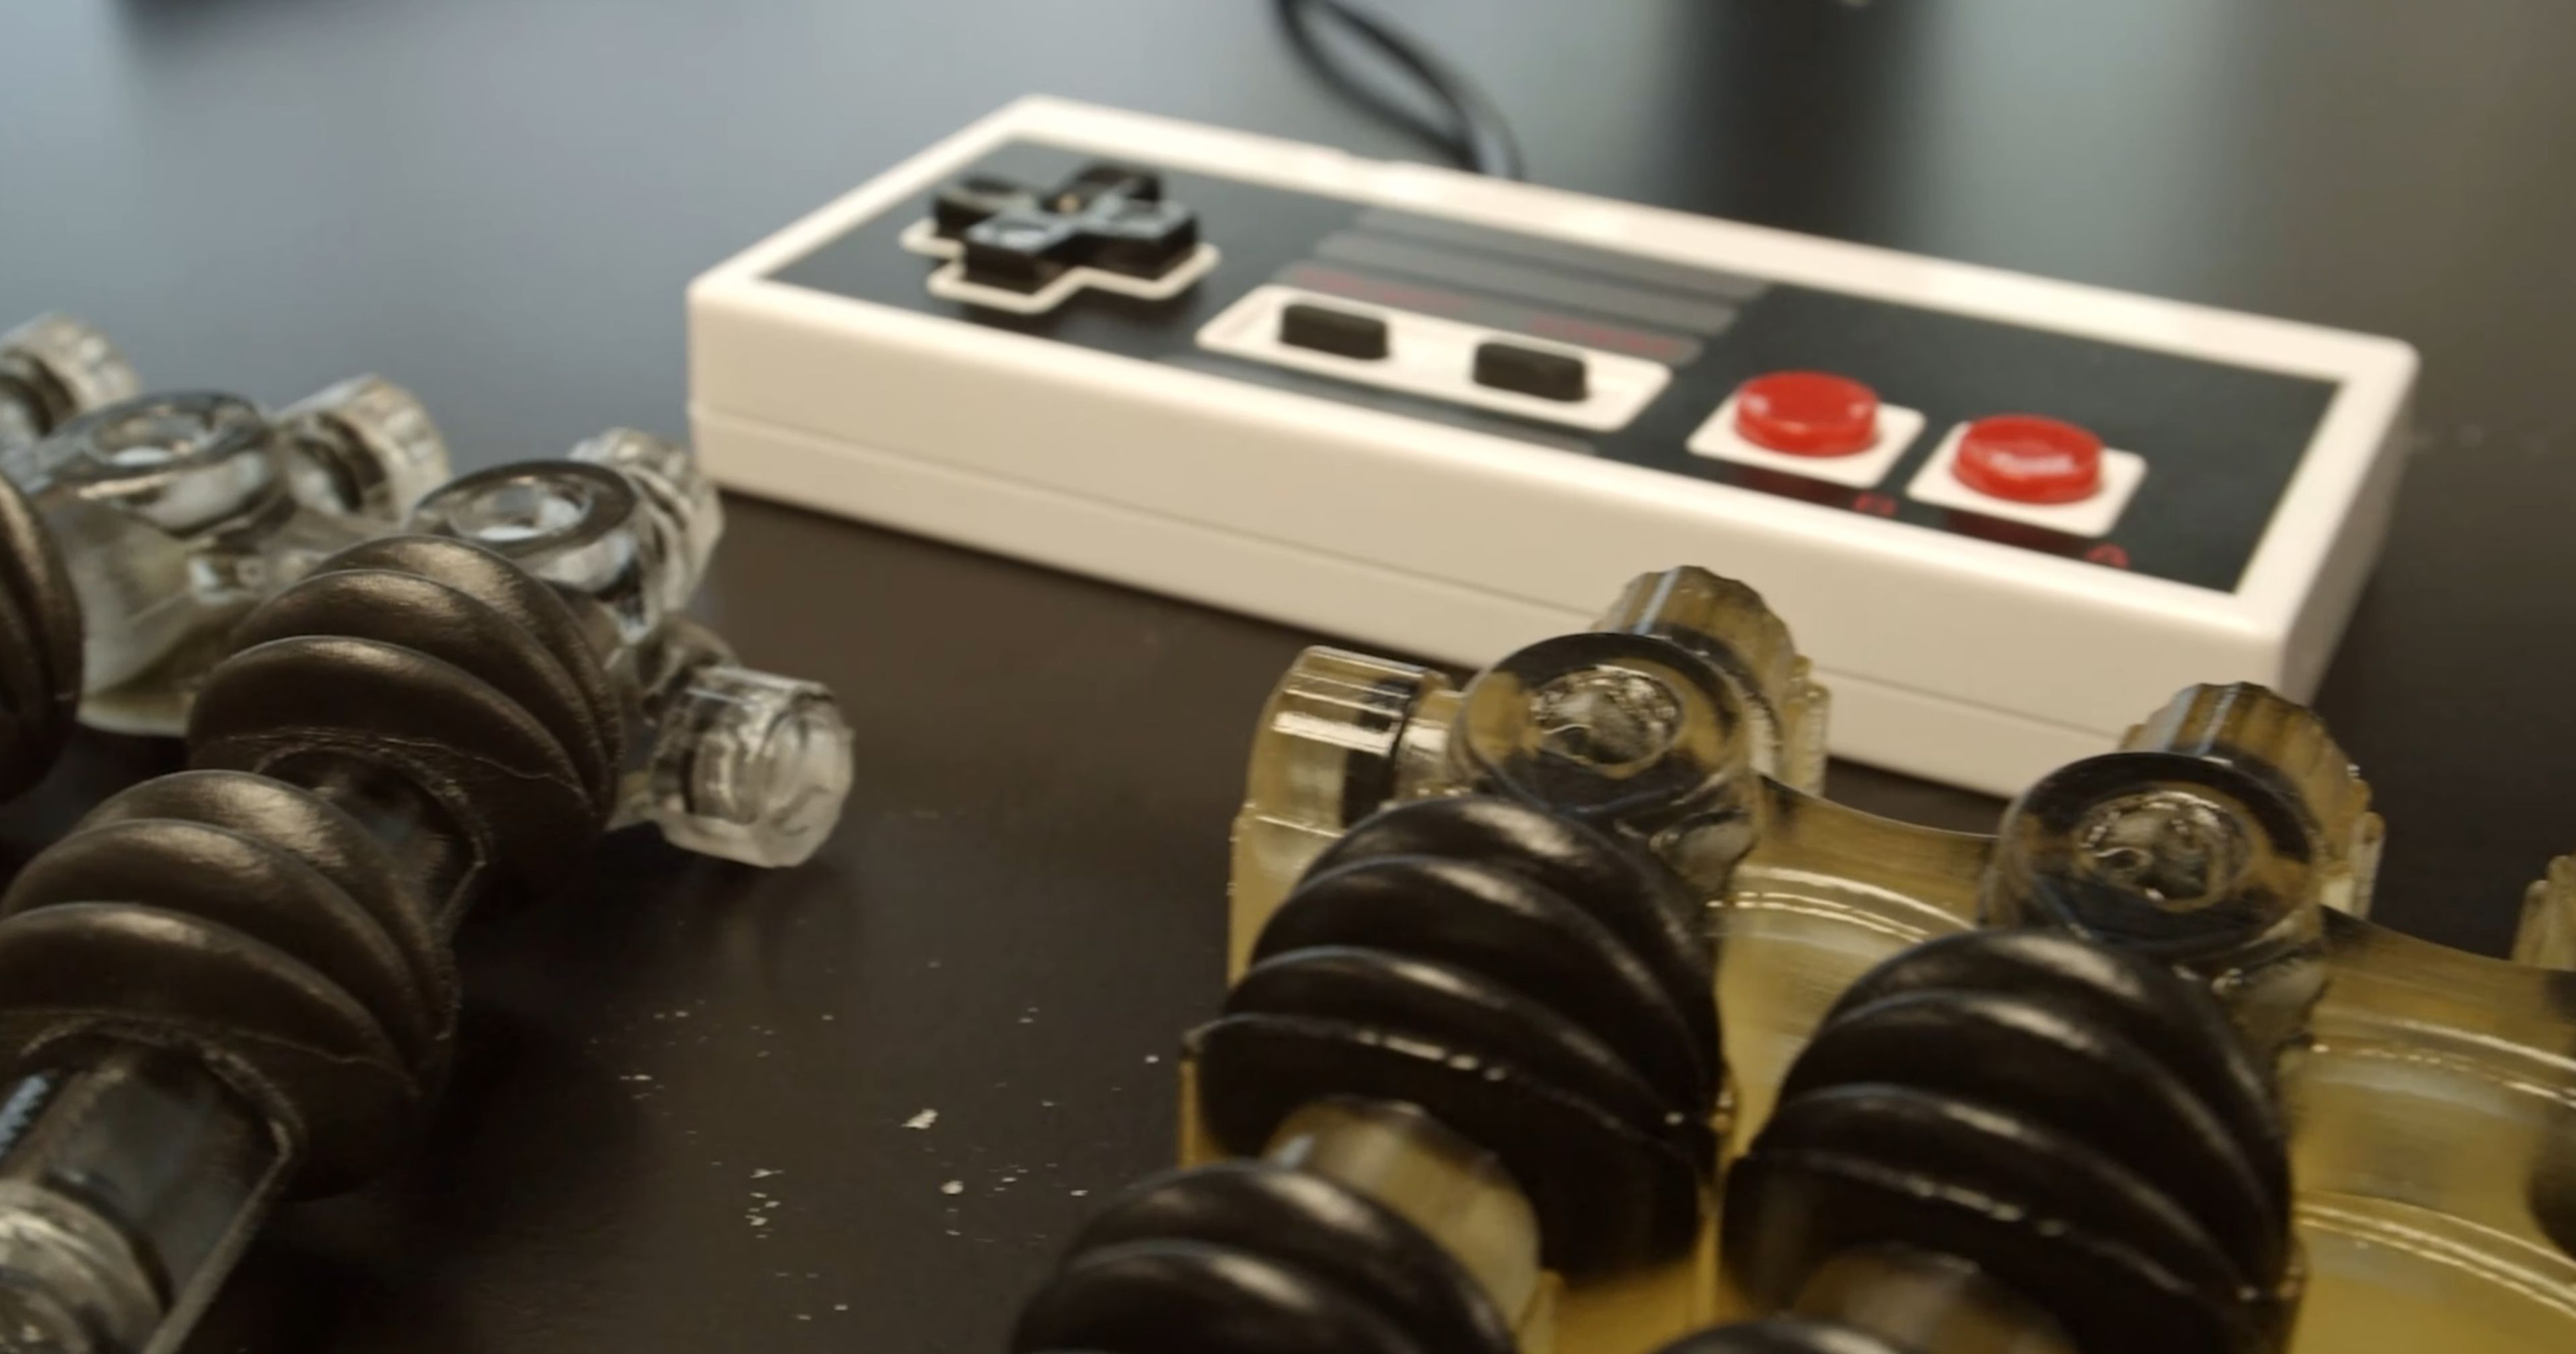 Detalle de la mano robot junto al mando de la NES